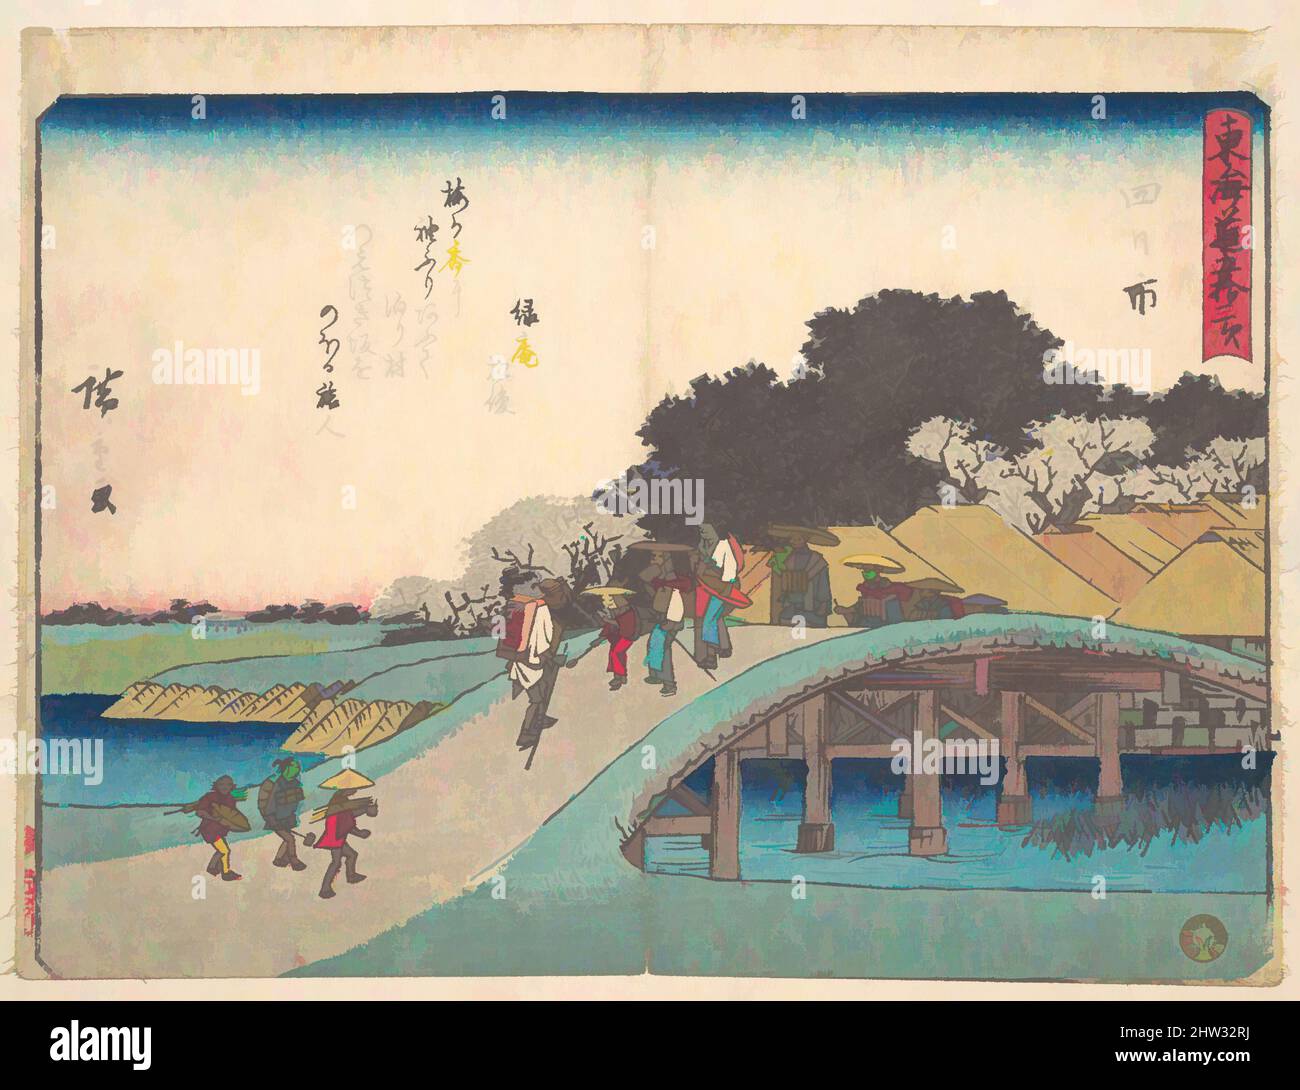 Art inspiré par 東海道五十三次 四日市, Yokkaichi, période Edo (1615–1868), env. 1838, Japon, imprimé polychrome sur bois ; encre et couleur sur papier, 8 1/2 x 6 1/2 po. (21,6 x 16,5 cm), estampes, Utagawa Hiroshige (japonais, Tokyo (Edo) 1797–1858 Tokyo (Edo, œuvres classiques modernisées par Artotop avec une touche de modernité. Formes, couleur et valeur, impact visuel accrocheur sur l'art émotions par la liberté d'œuvres d'art d'une manière contemporaine. Un message intemporel qui cherche une nouvelle direction créative. Artistes qui se tournent vers le support numérique et créent le NFT Artotop Banque D'Images